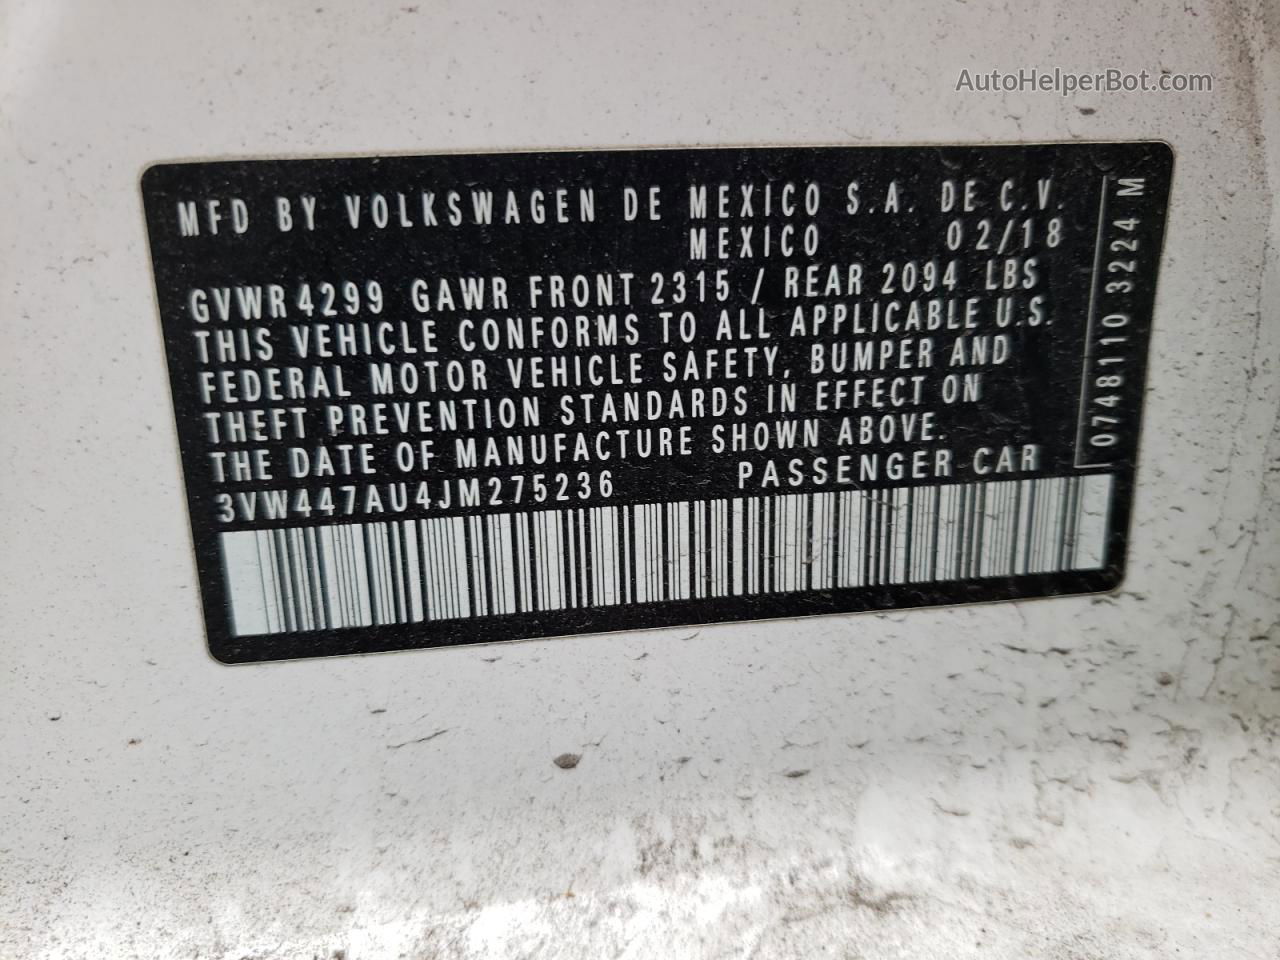 2018 Volkswagen Gti S/se Белый vin: 3VW447AU4JM275236